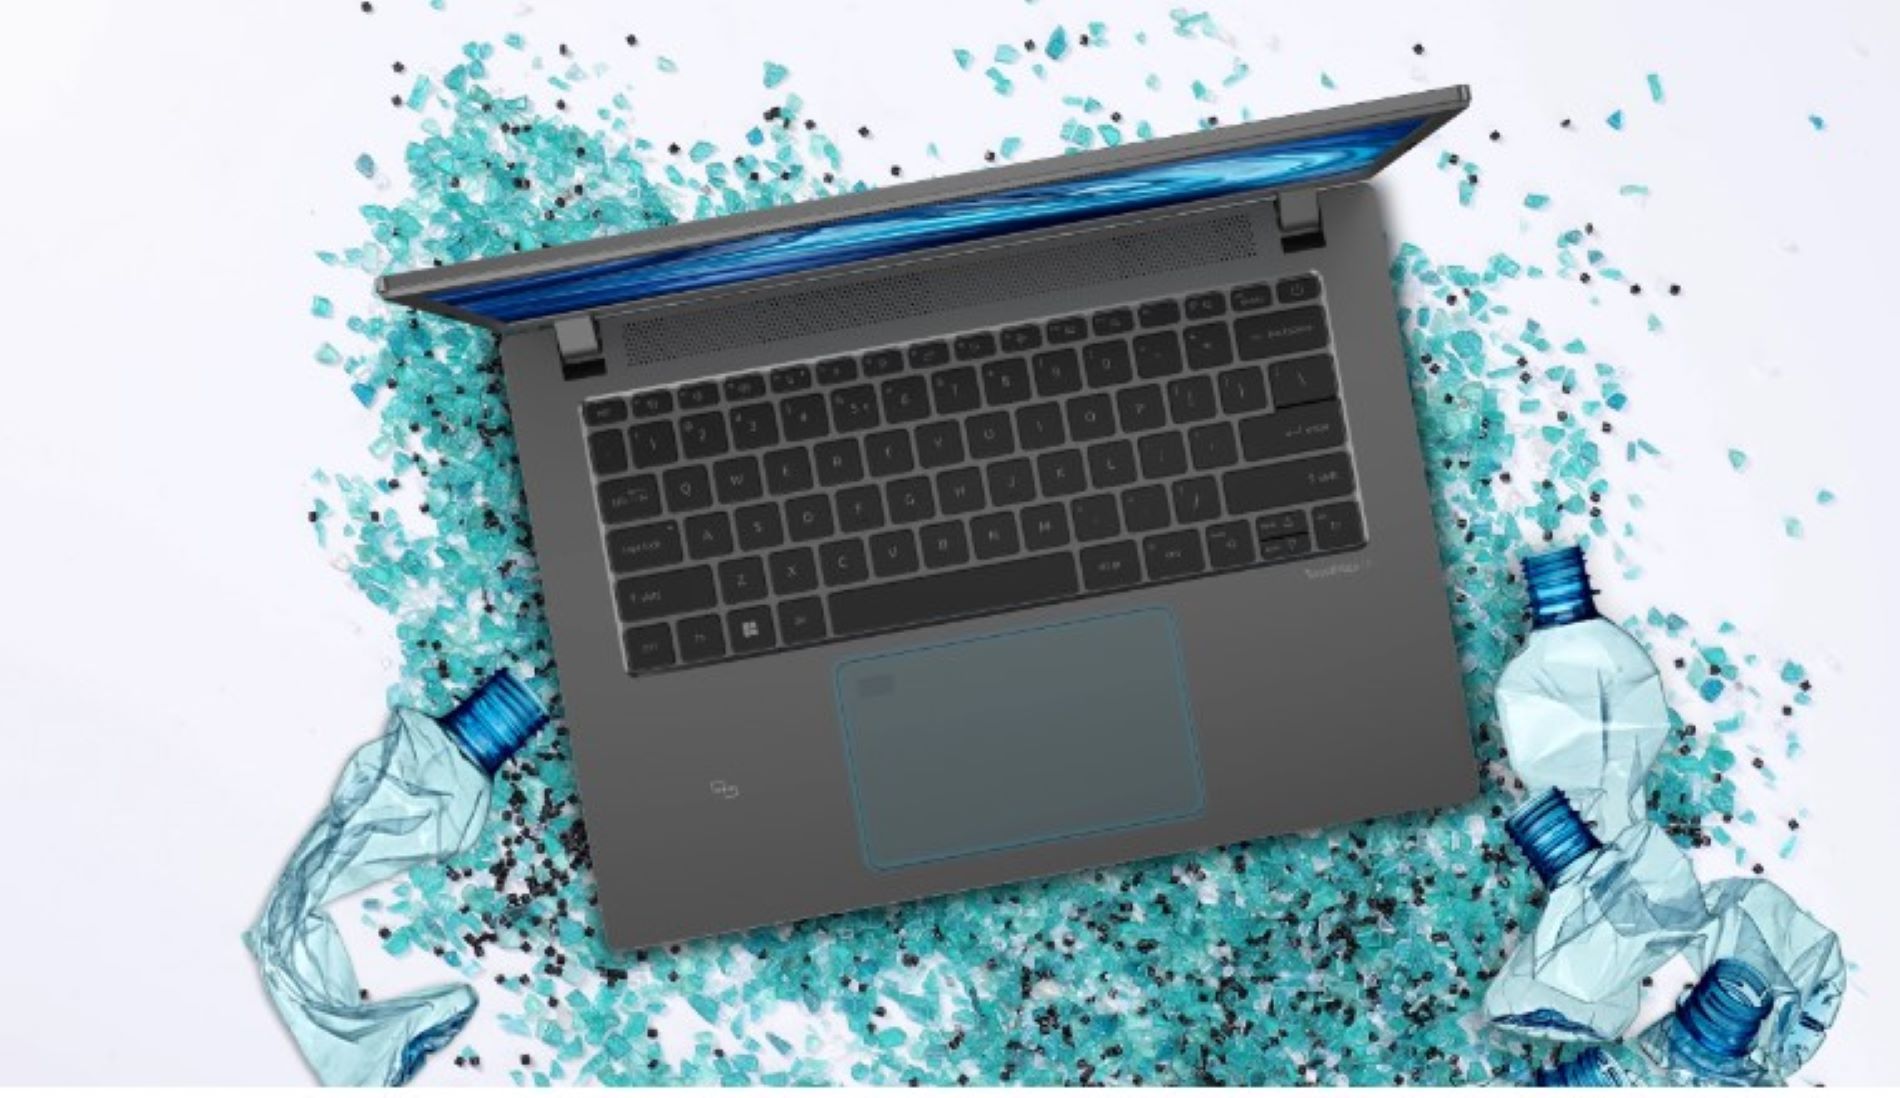 Acer TravelMate adalah laptop Go Green yang bisa penuhi produktivitas dan mobilitas kamu